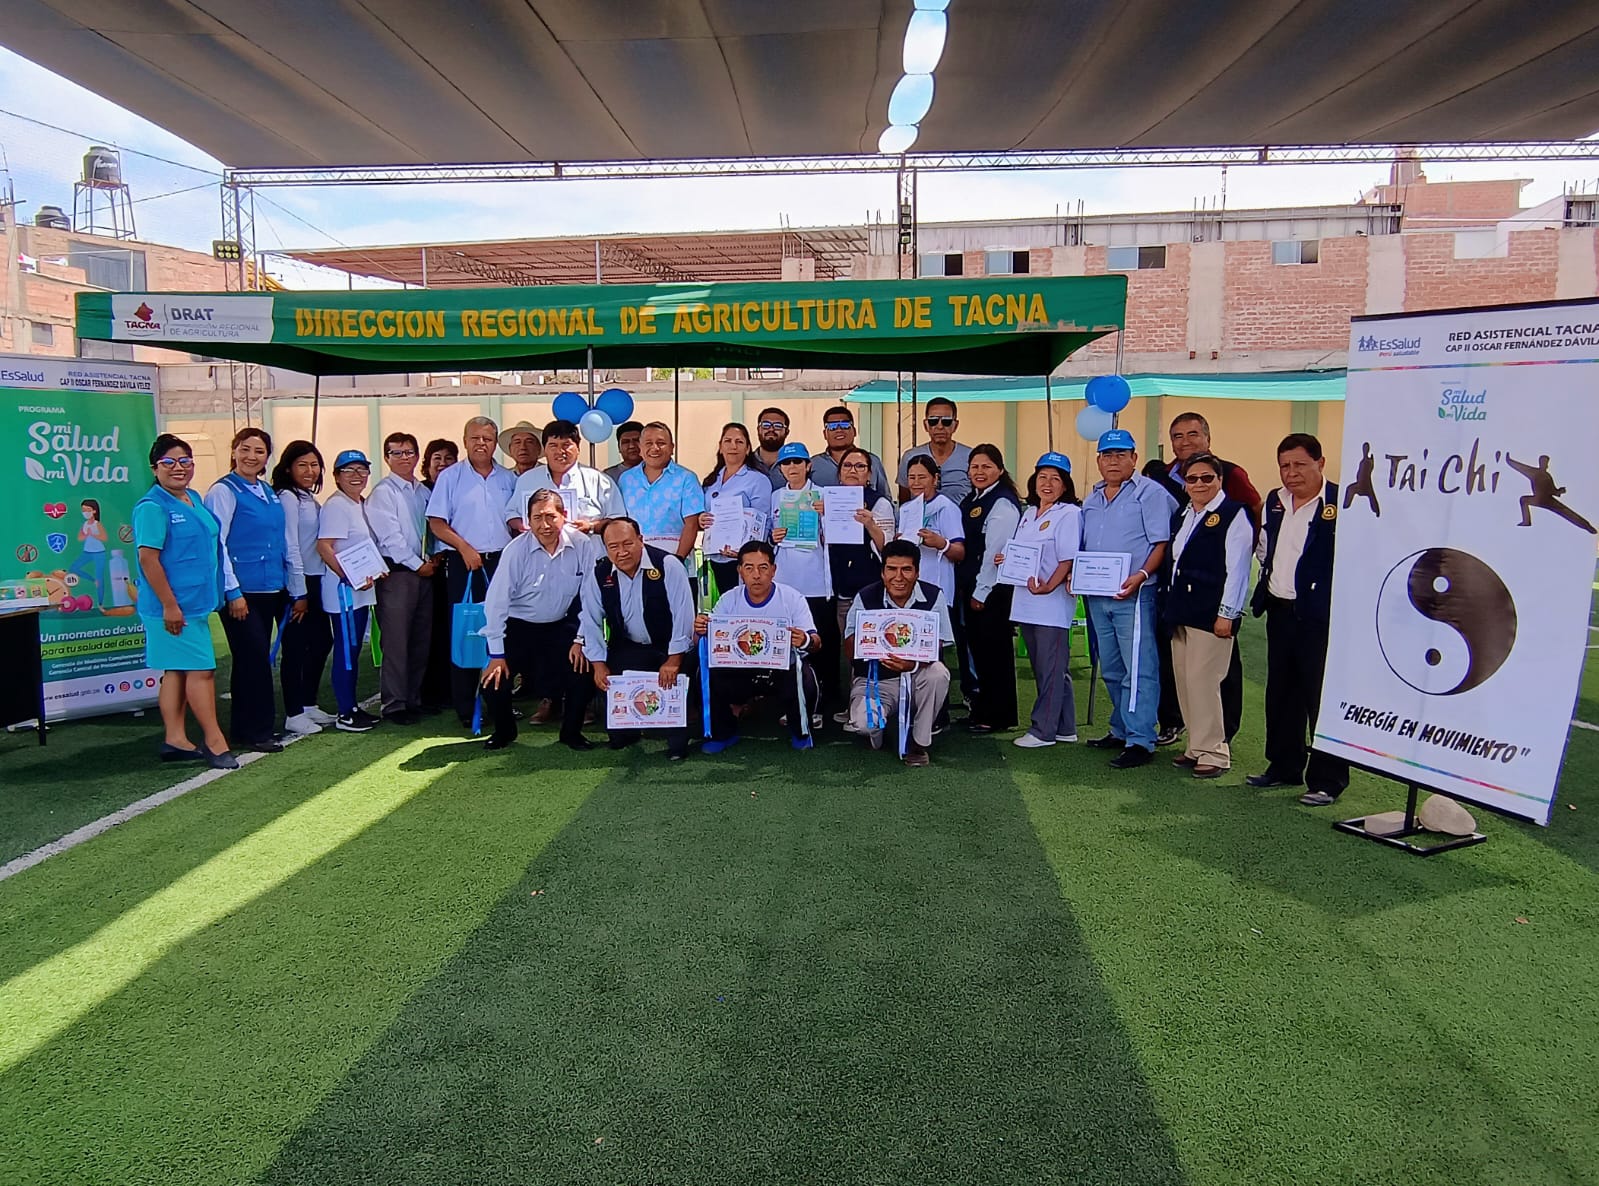 Dirección Regional de Agricultura Tacna en alianza con Essalud clausuran Programa “Mi Salud, Mi Vida”